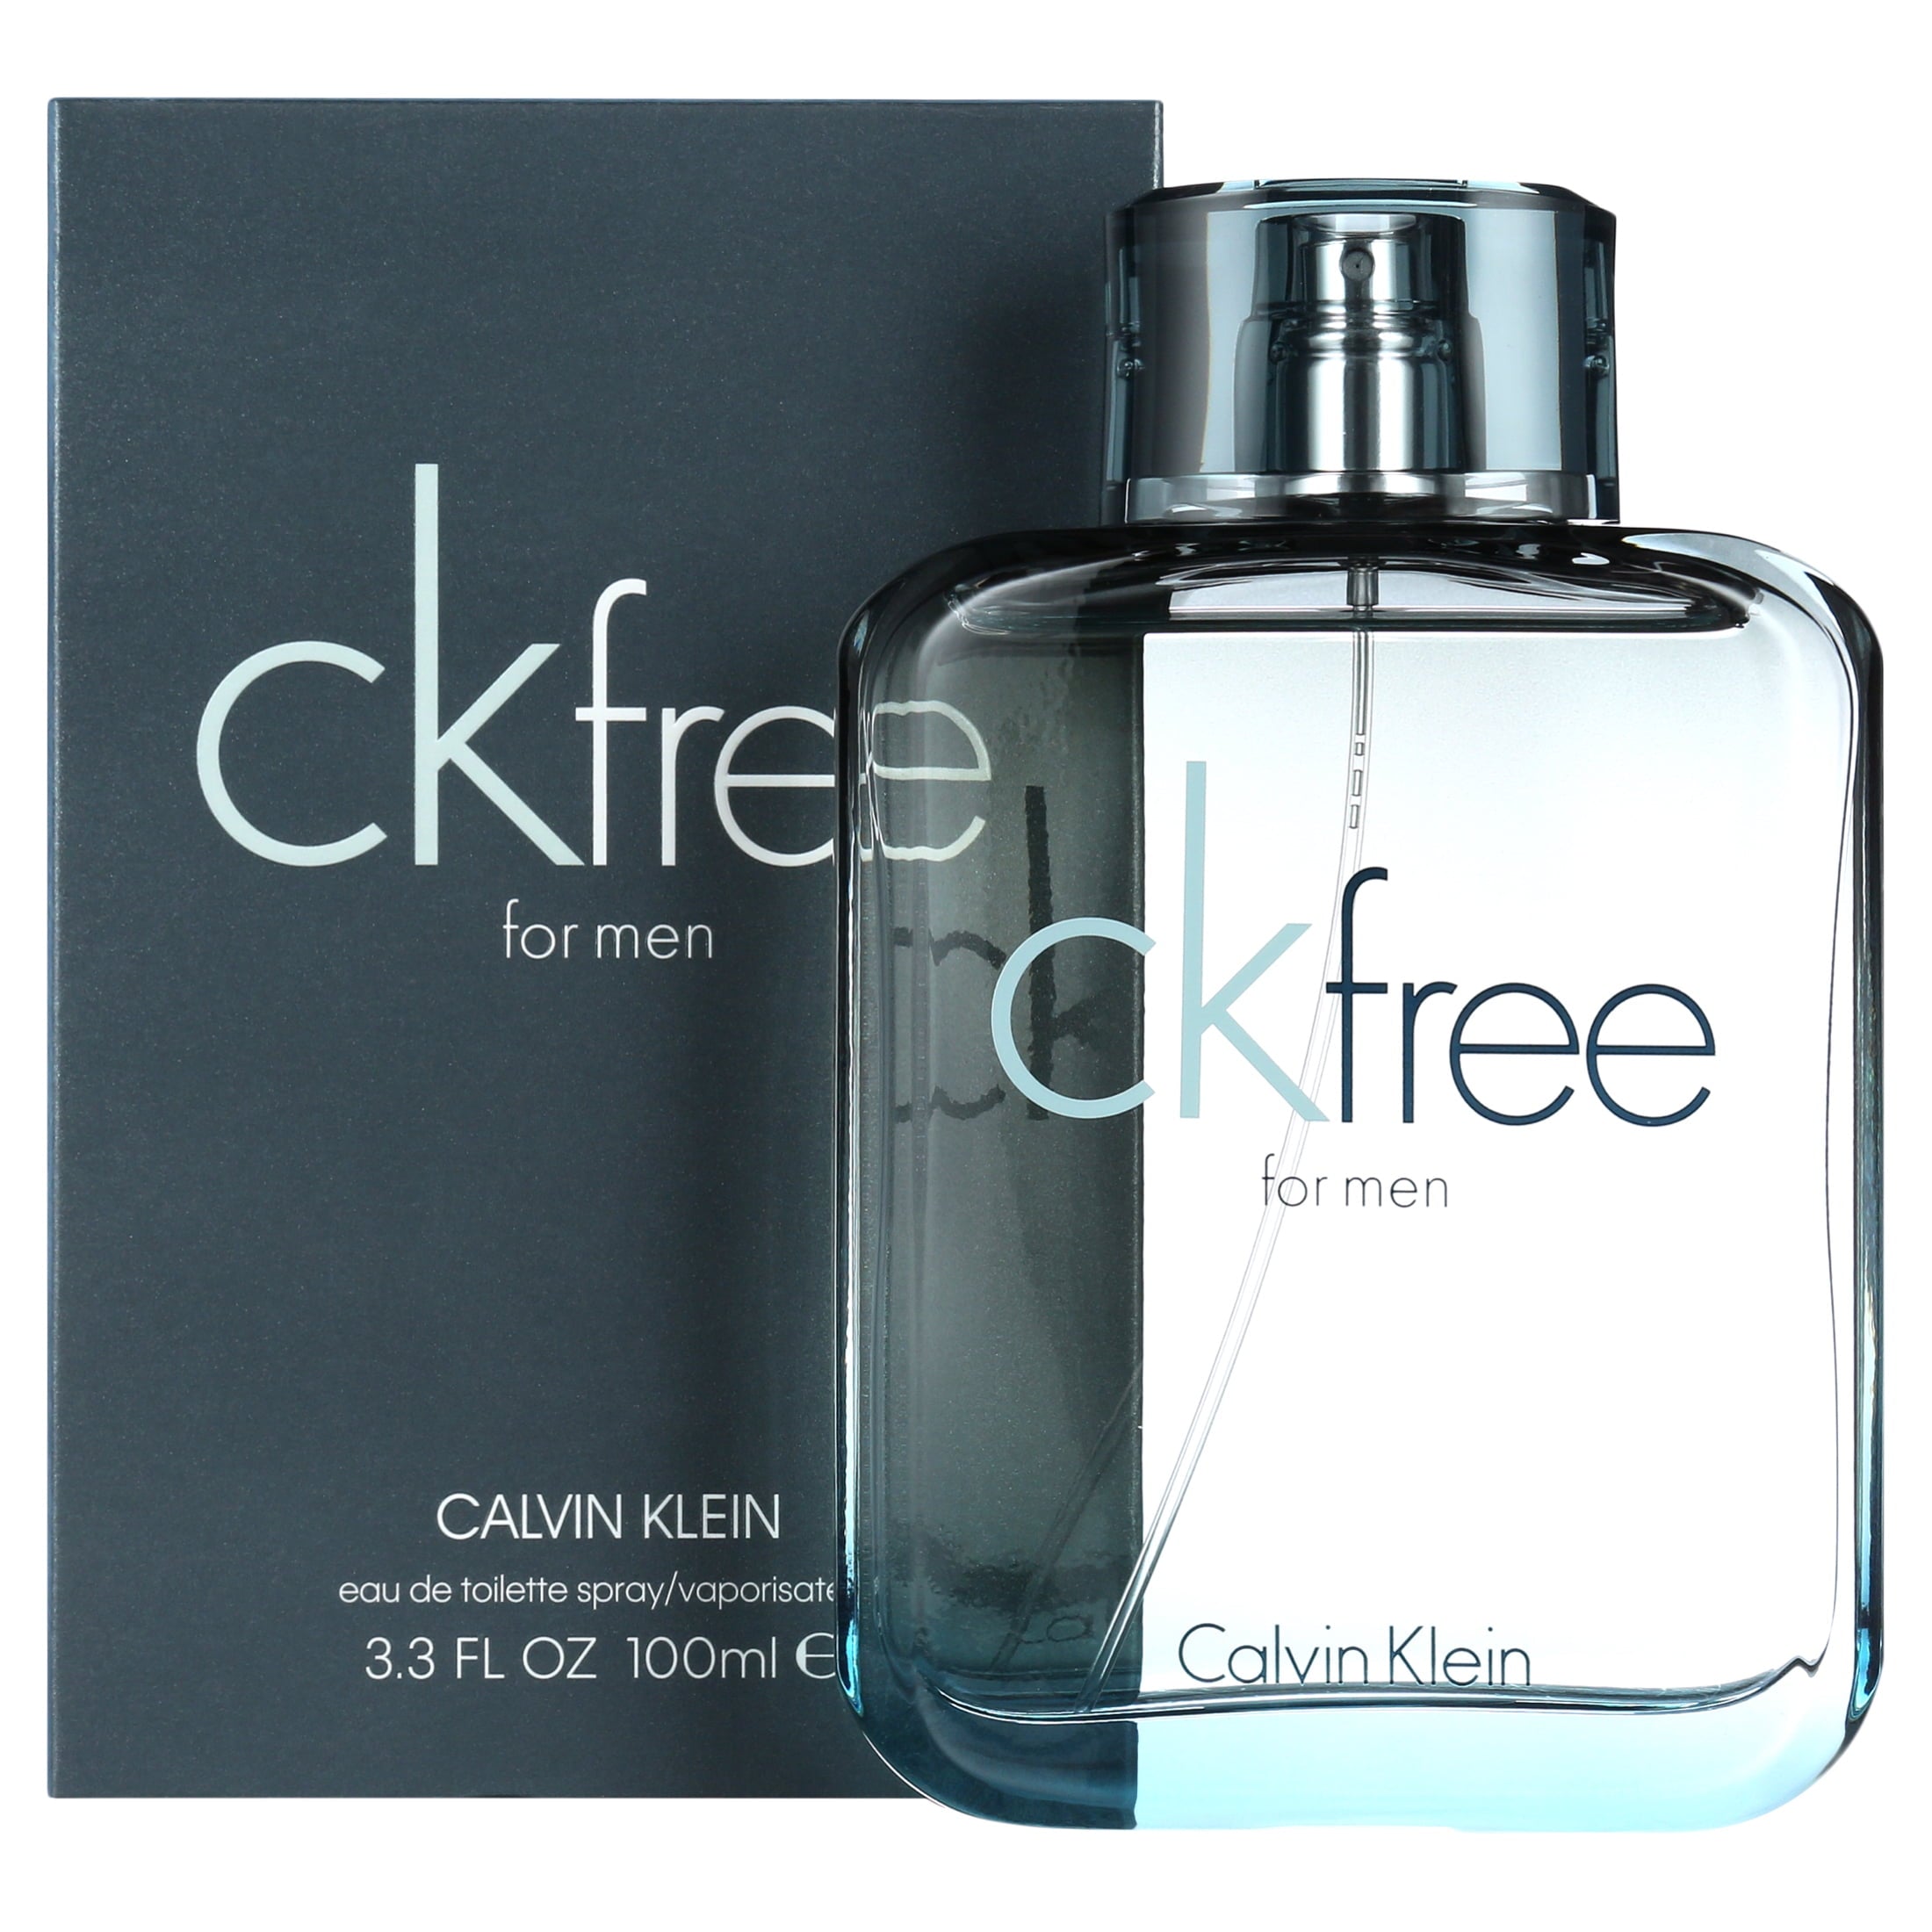 Calvin Klein CK Free EDT For Men | My Perfume Shop Australia